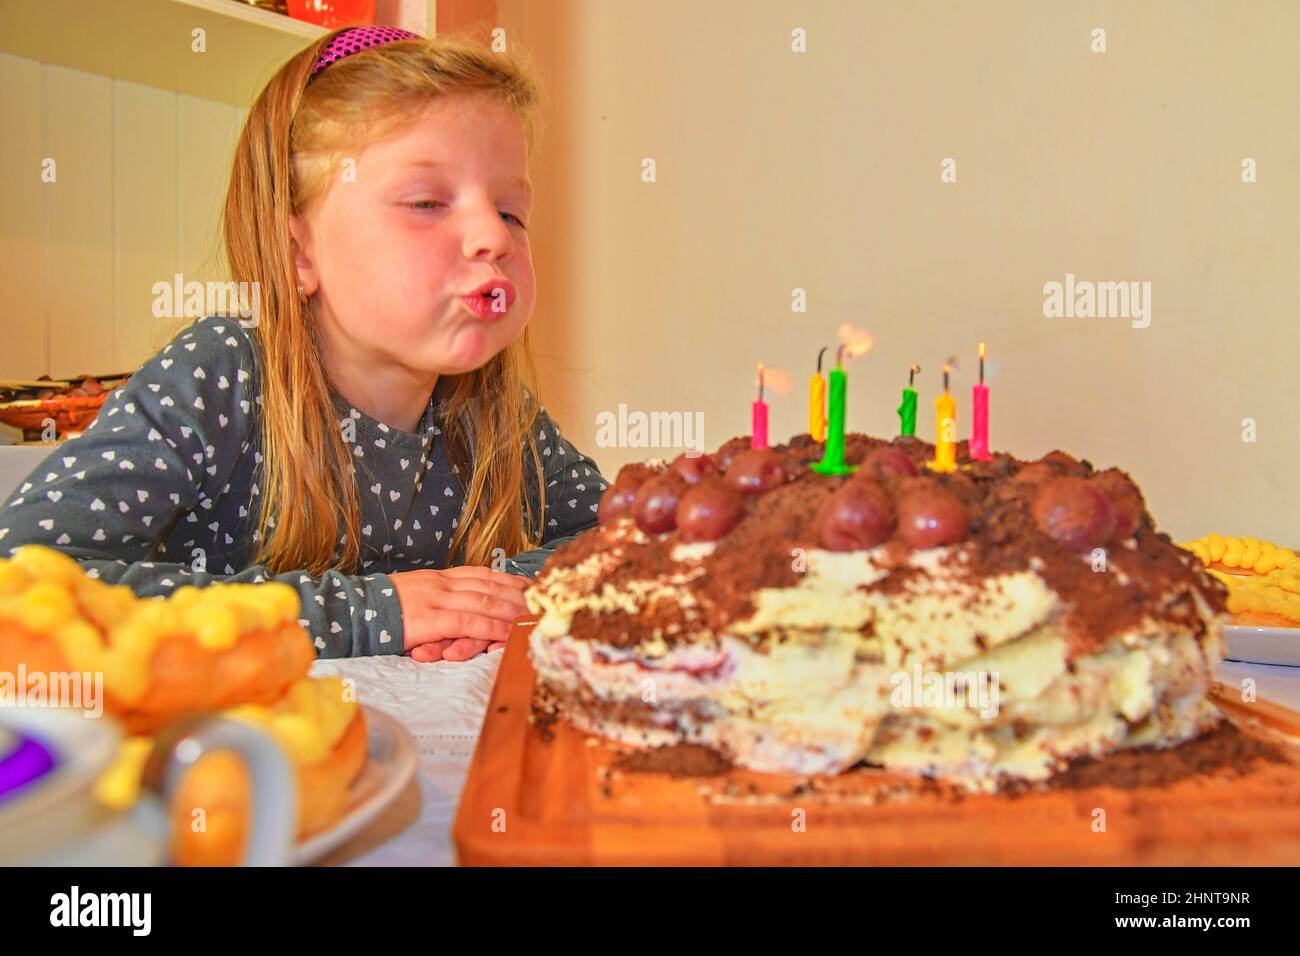 Kleine Mädchen bläst die Kerzen auf dem Geburtstagskuchen. Kleine Mädchen ihre sechs Geburtstag feiern. Geburtstag Kuchen und kleine Mädchen Stockfoto